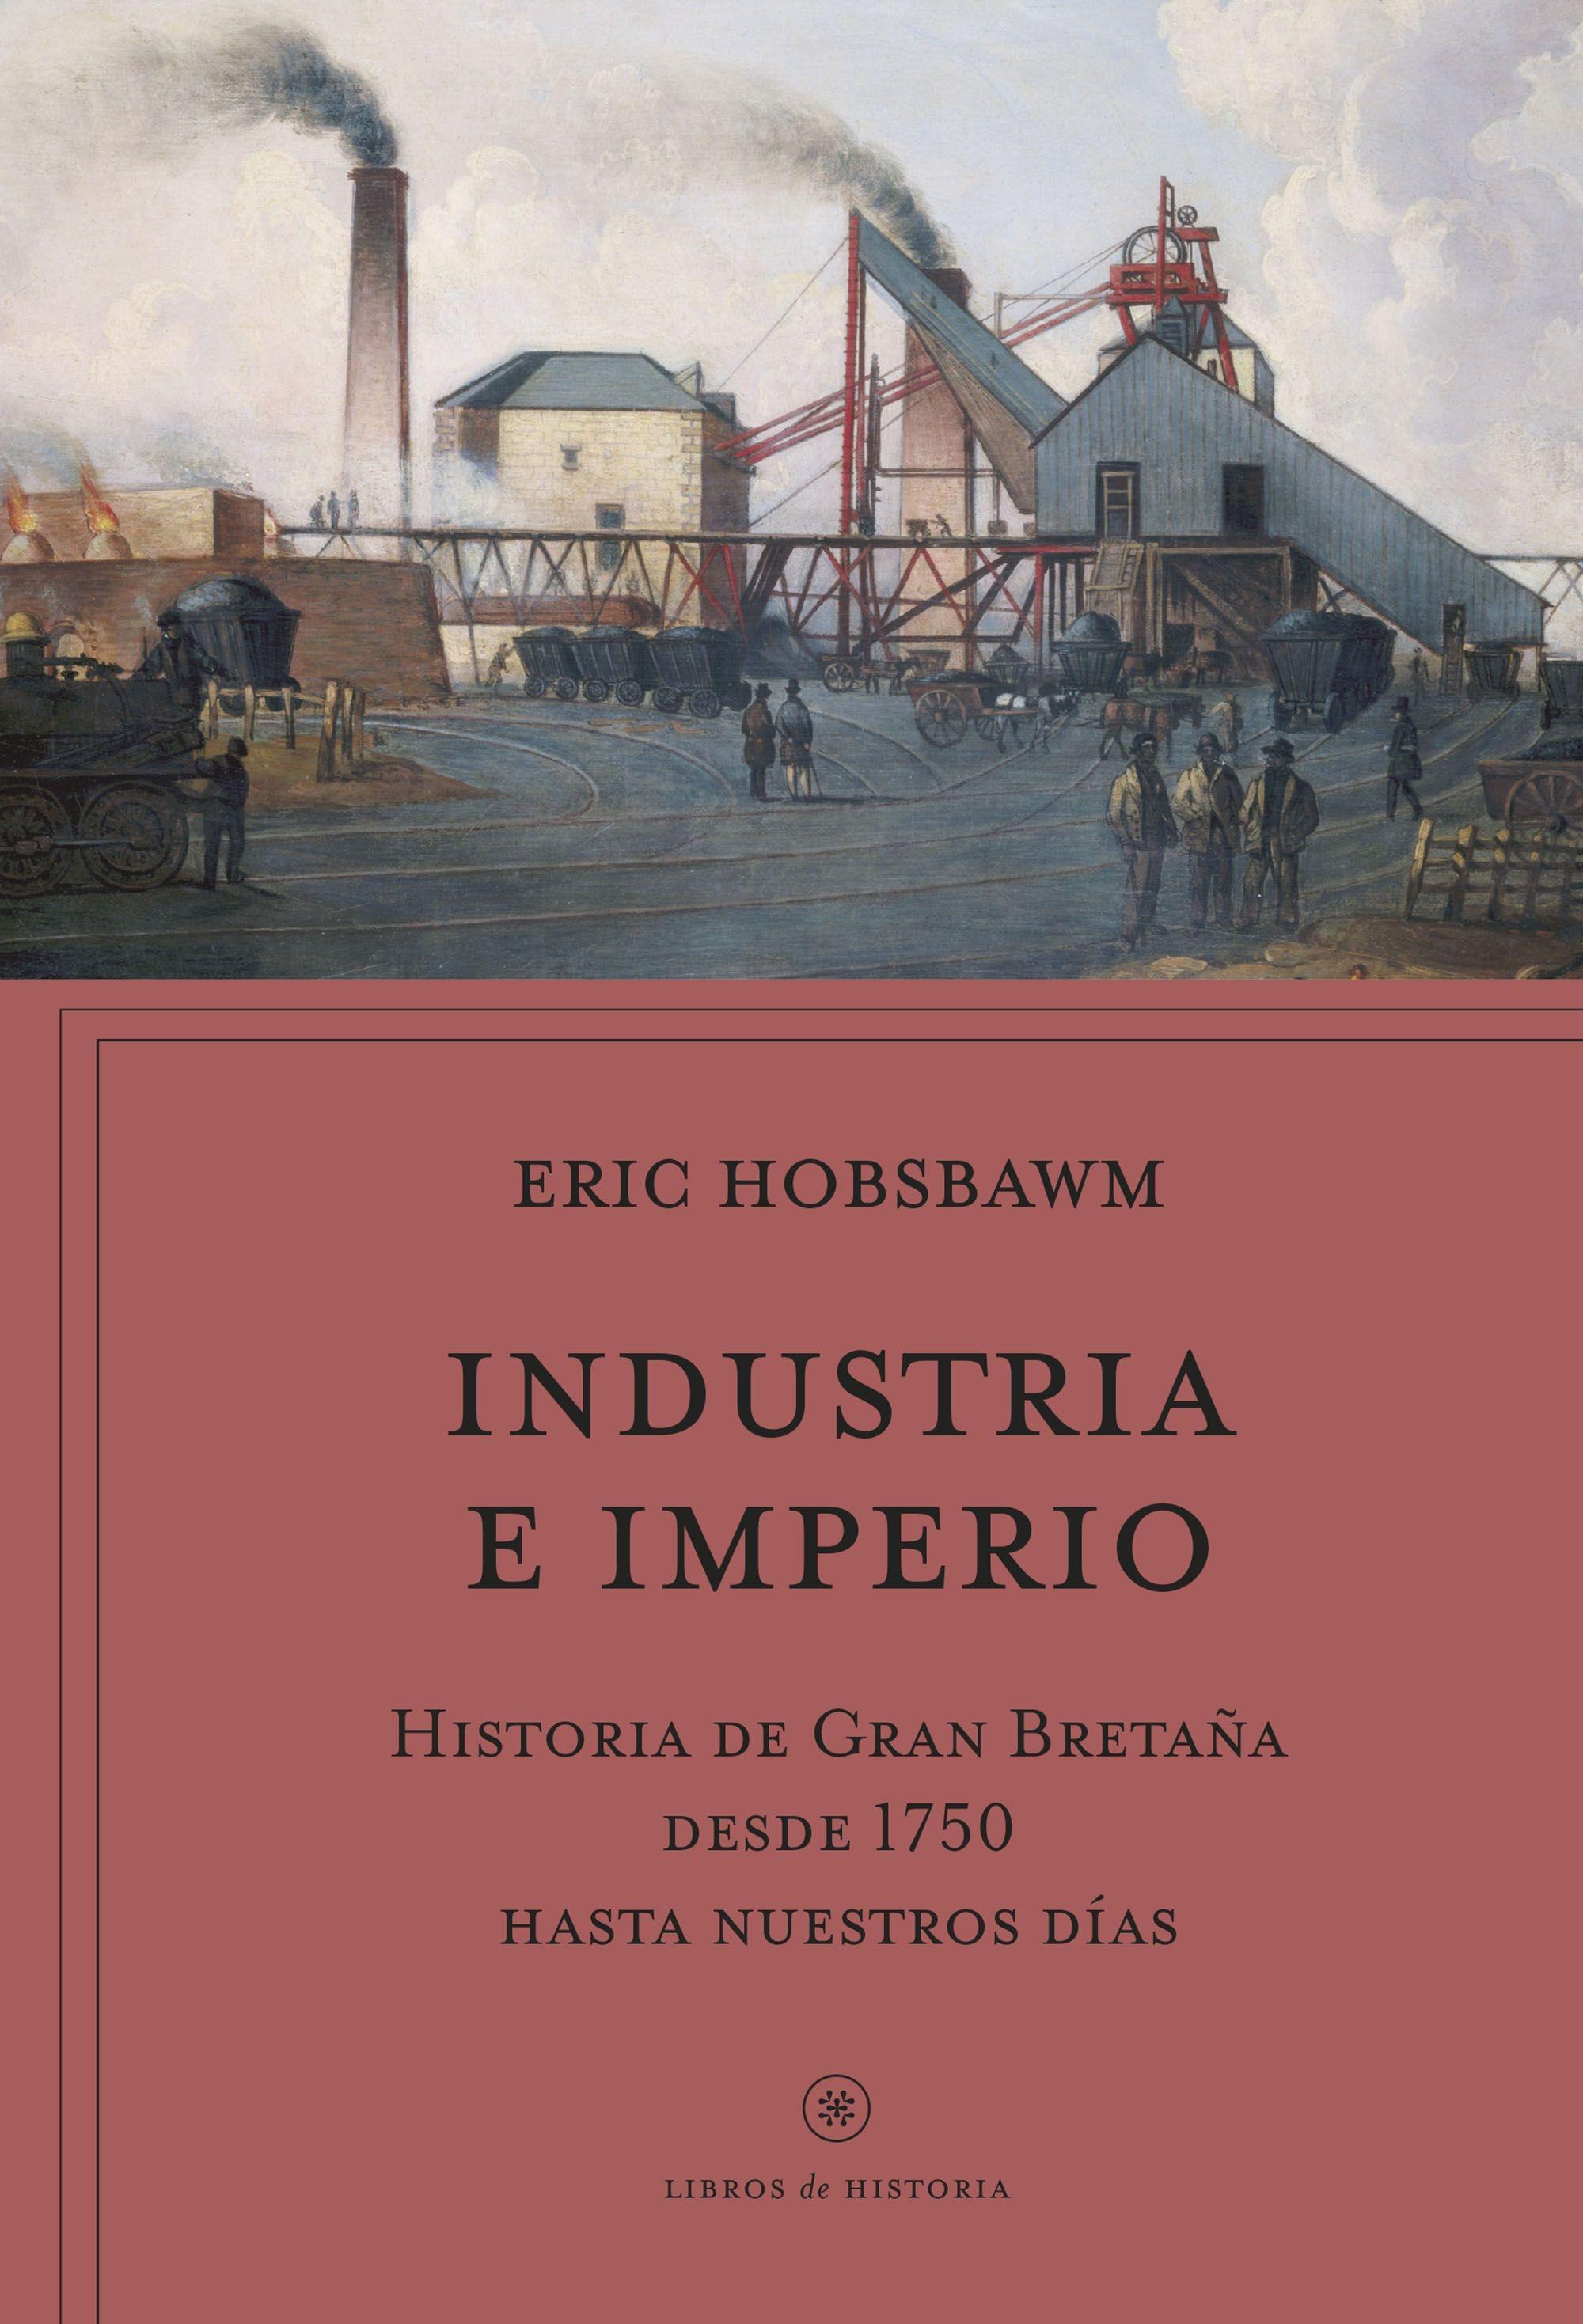 Industria e Imperio "Historia de Gran Bretaña desde 1750 hasta Nuestros Días"